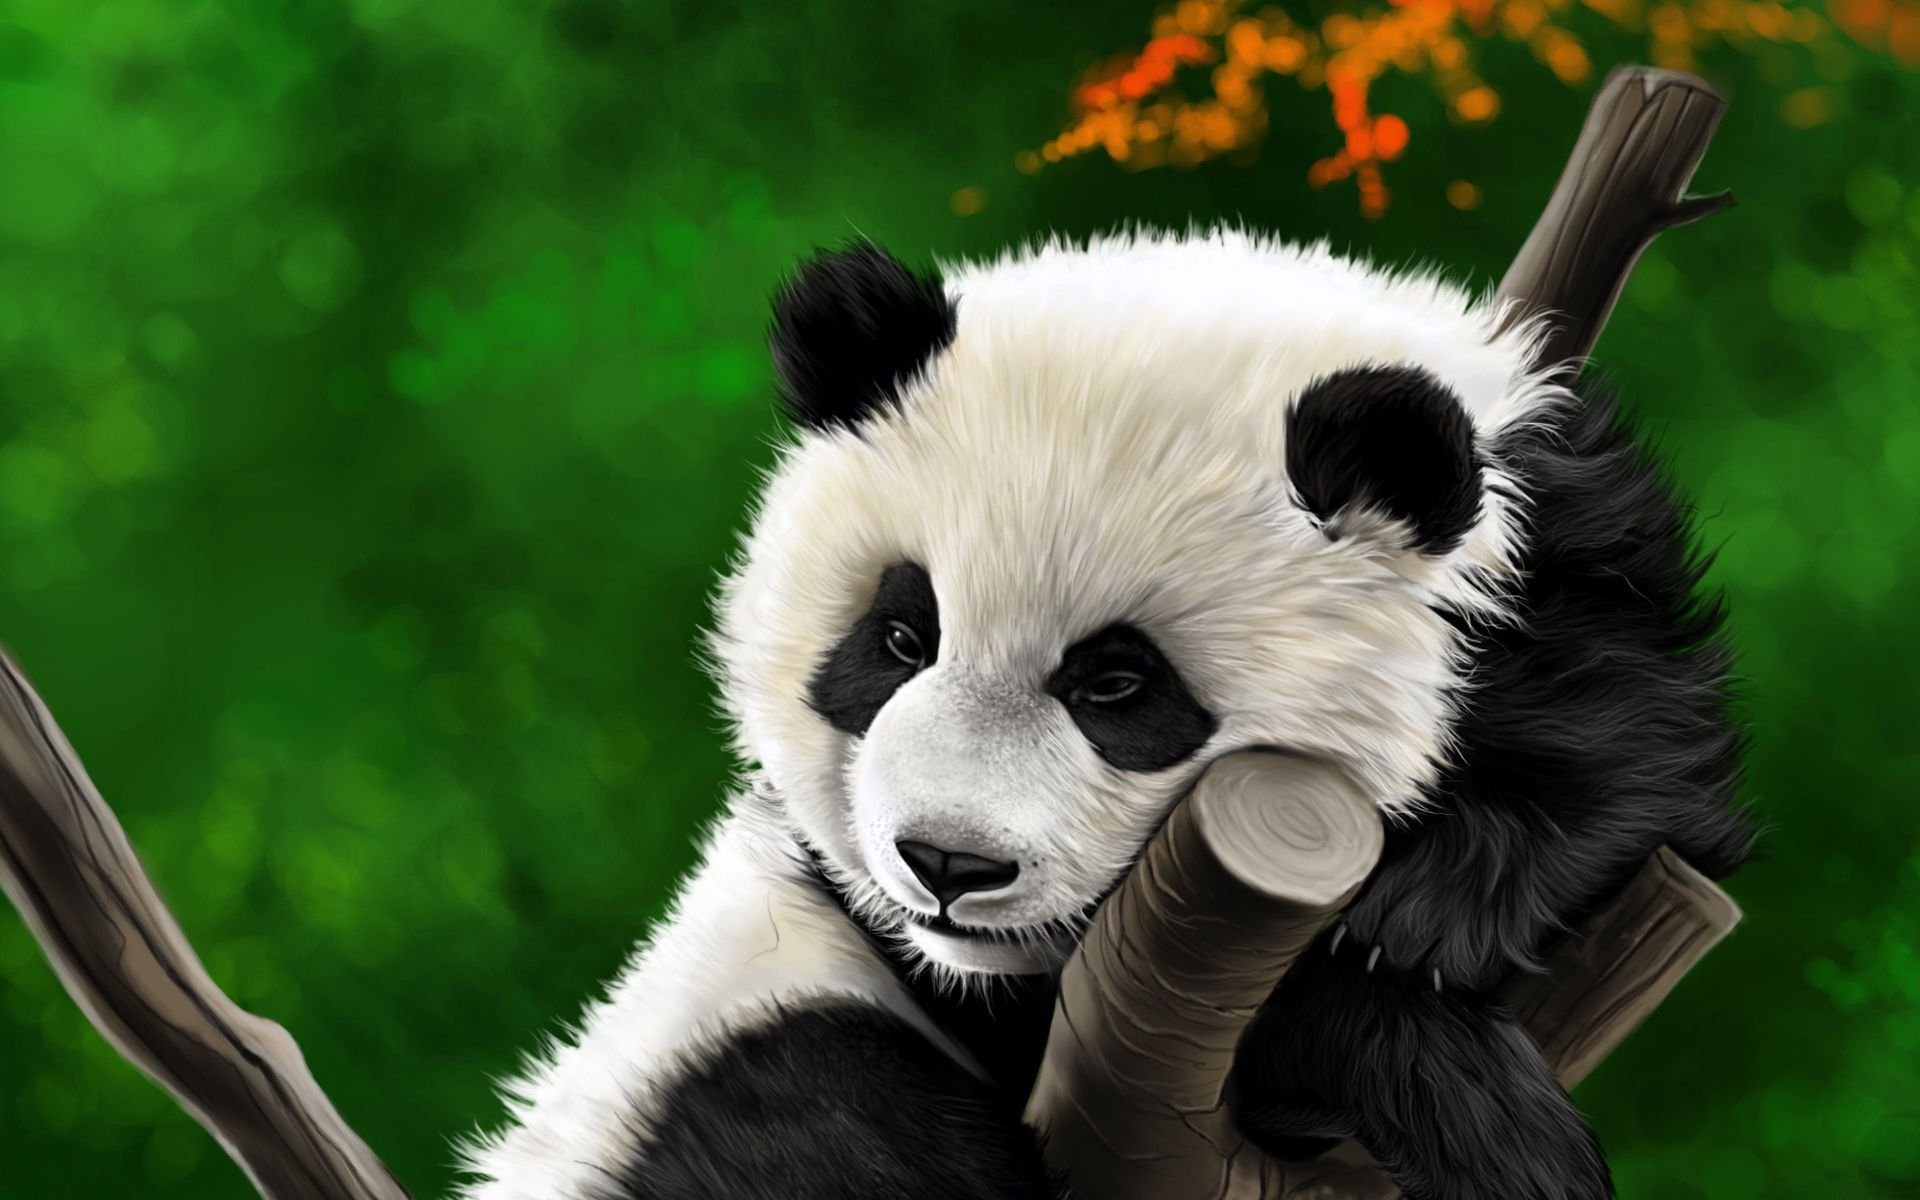 Заставка на телефон для детей. Панда обои. Красивая Панда. Панда бой. Панда арт.